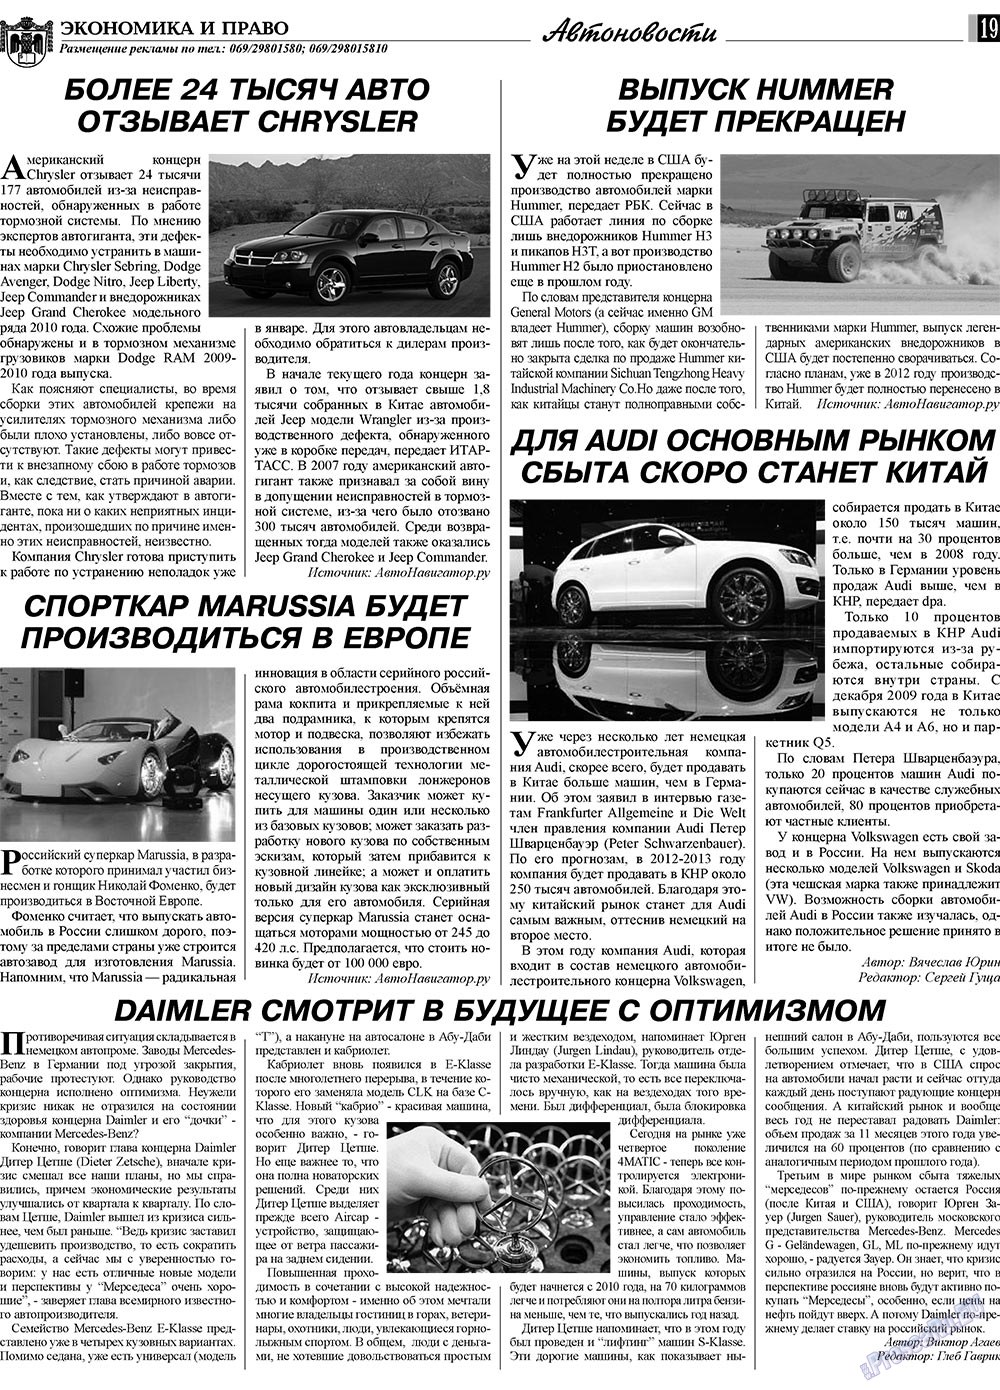 Экономика и право, газета. 2010 №2 стр.19